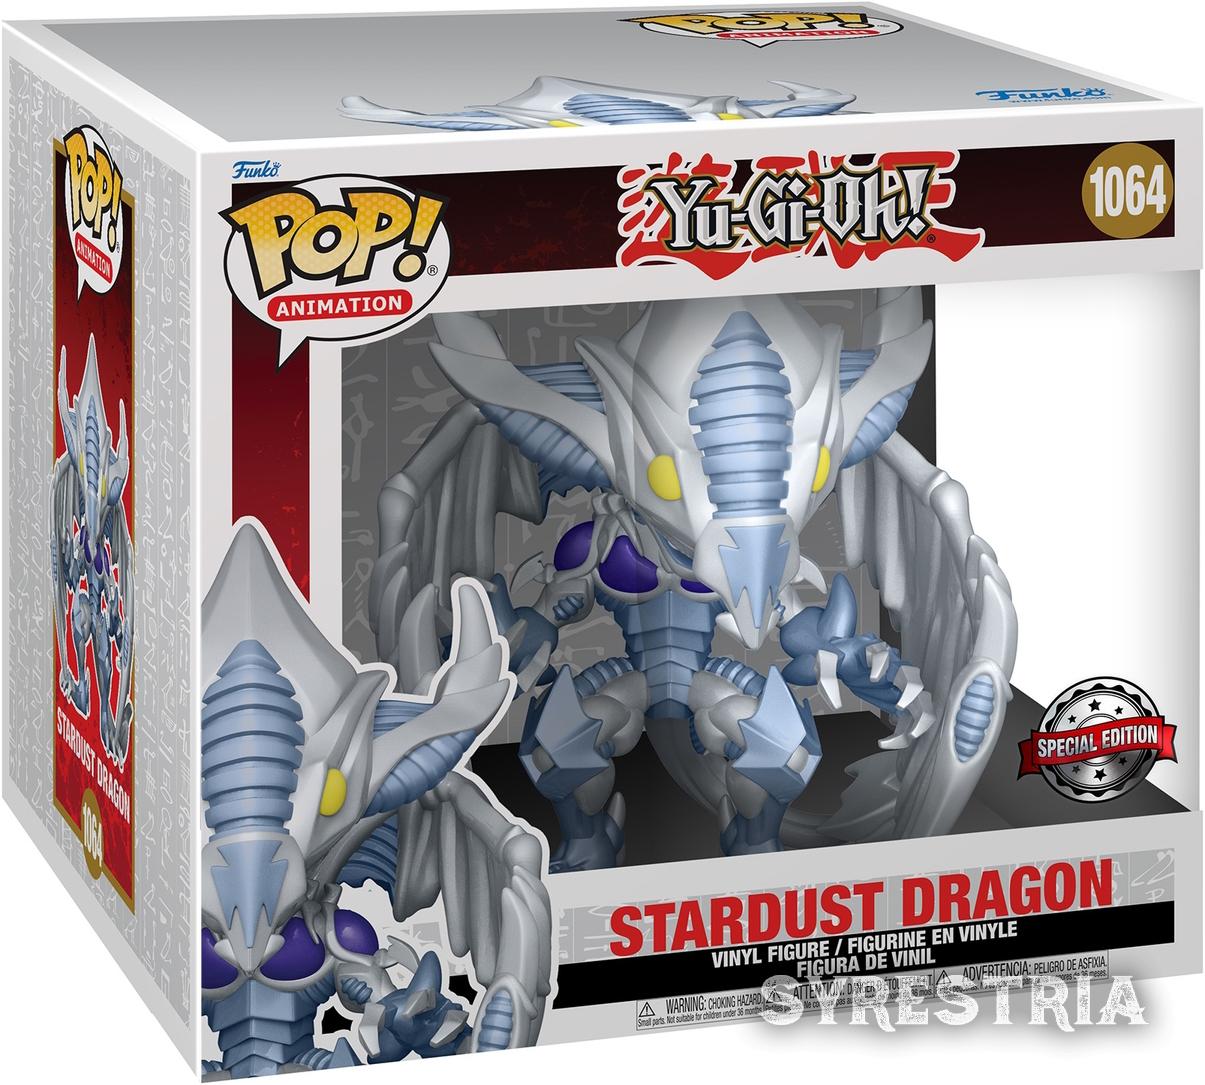 Yu-Gi-Oh! - Stardust Dragon 1064 Special Edition - Funko Pop! - Vinyl Figur